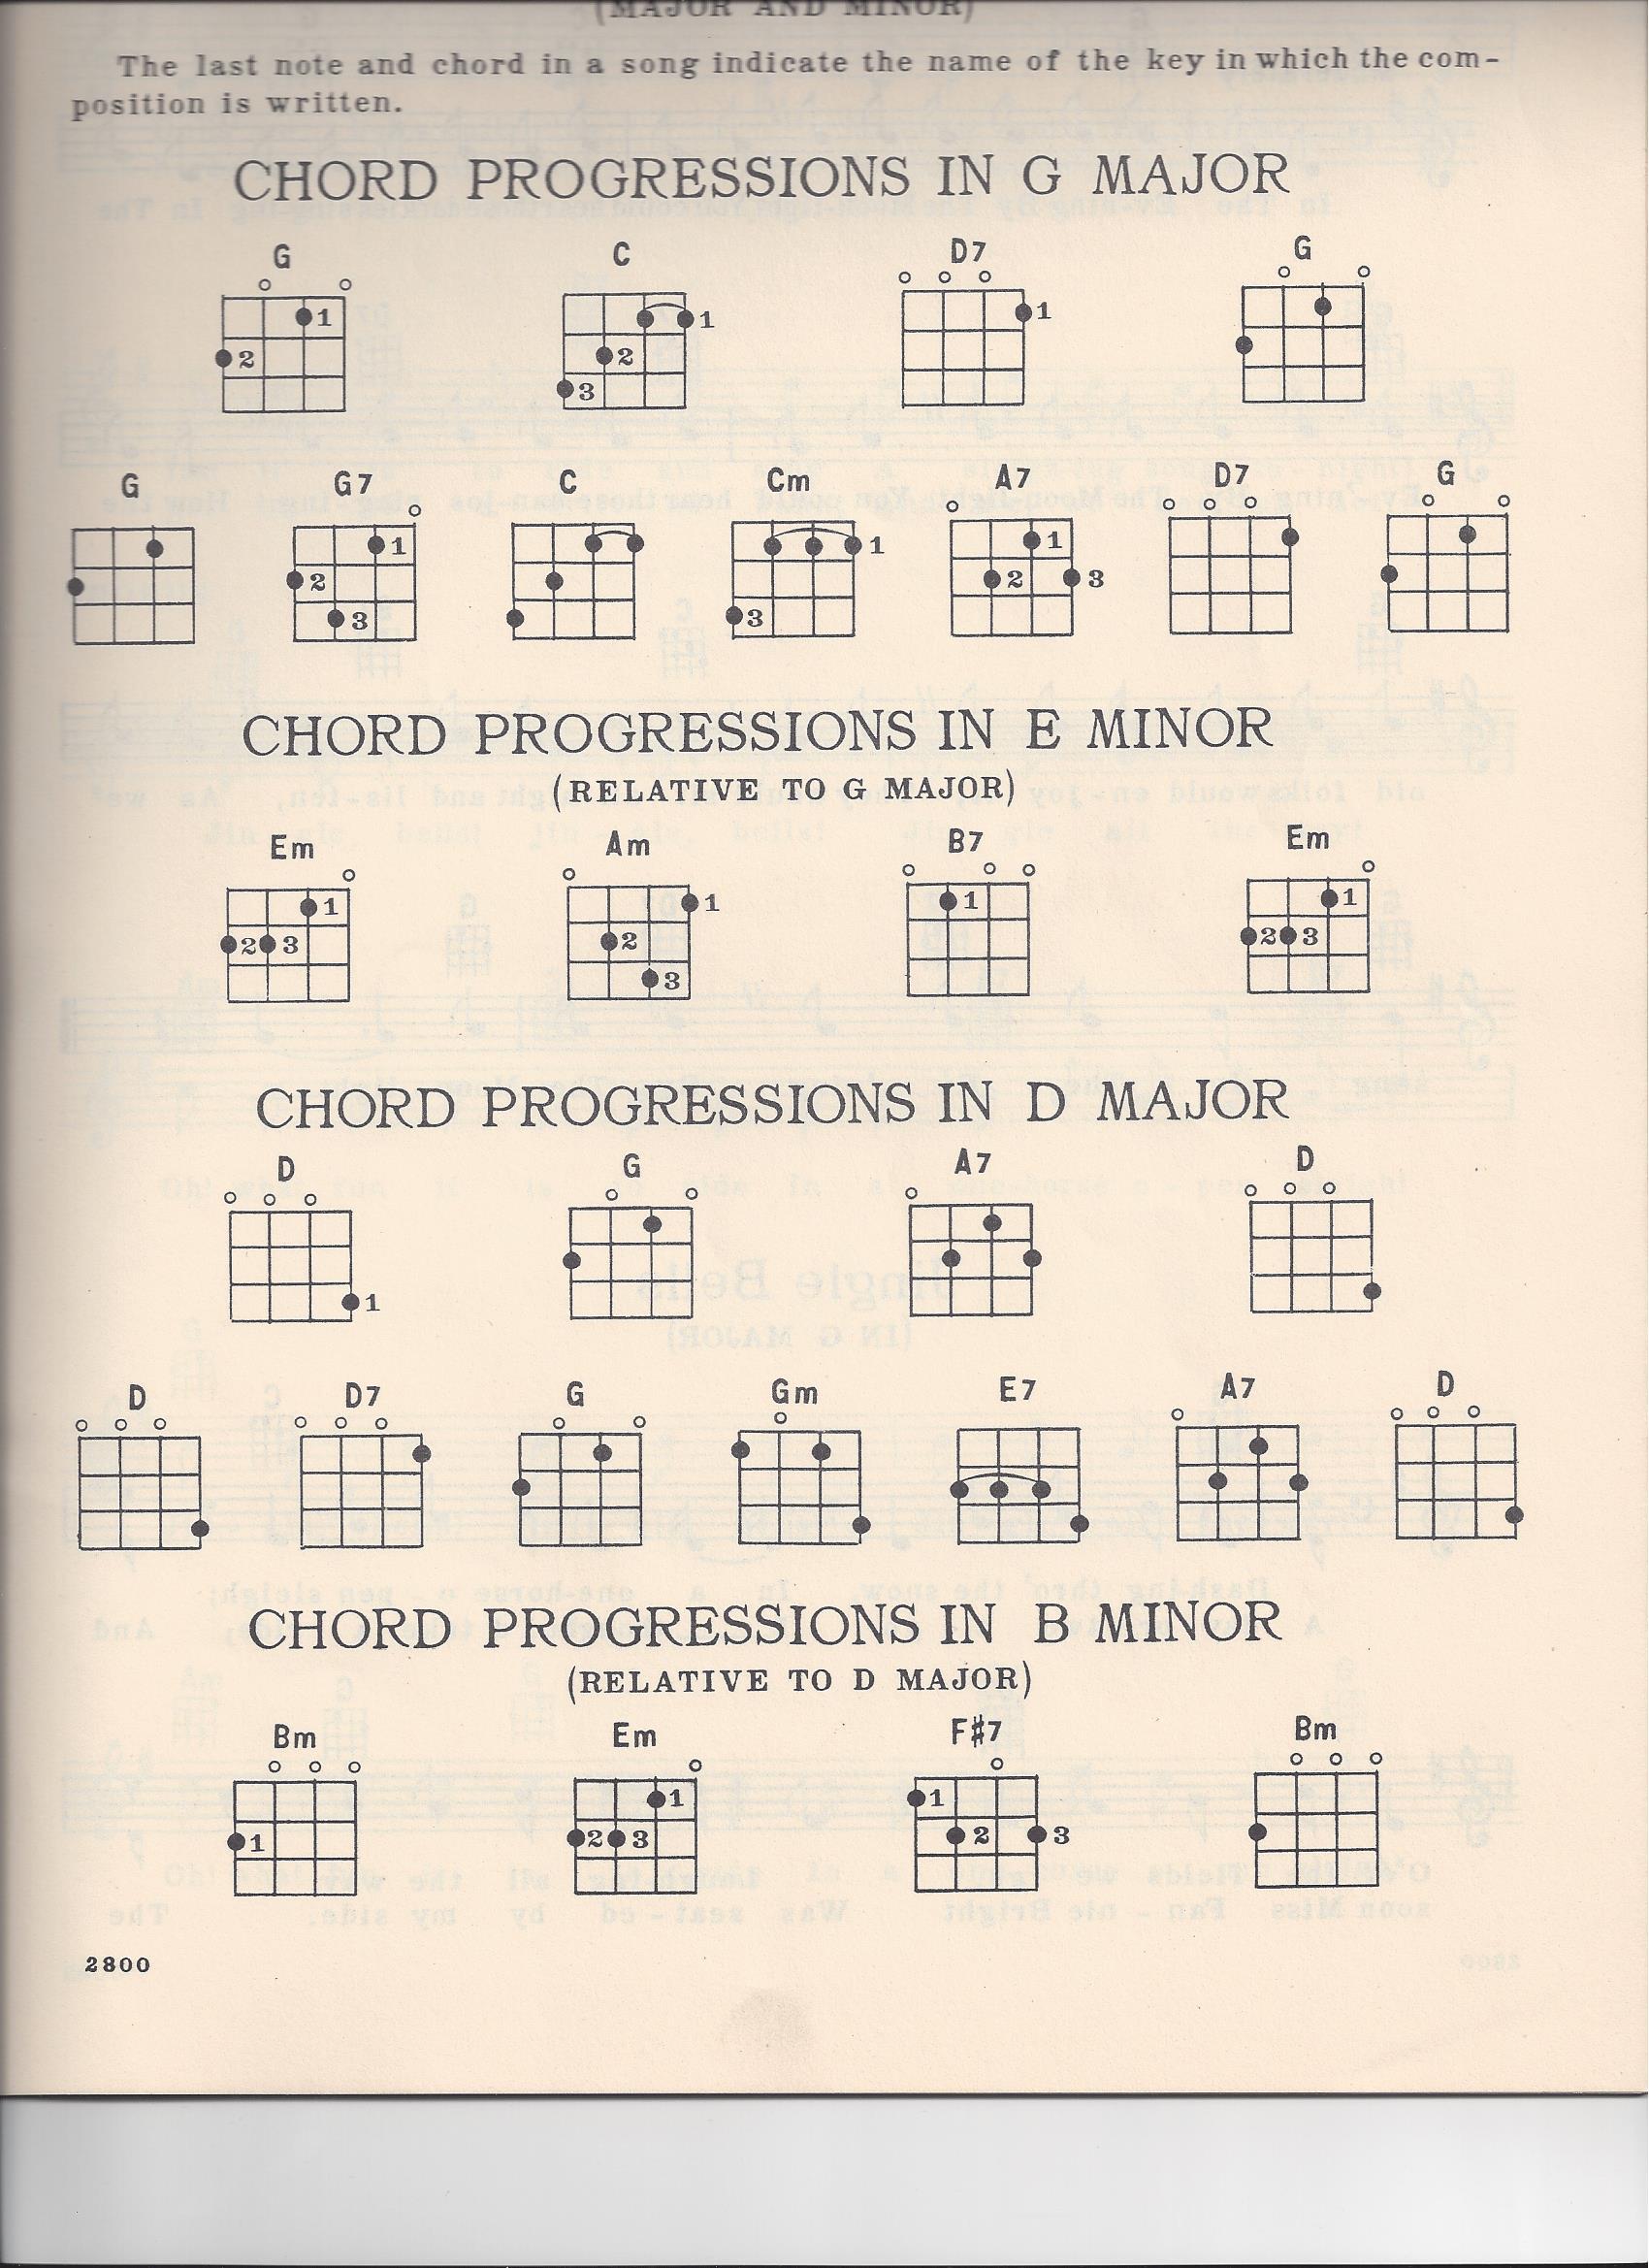 d ukulele chord